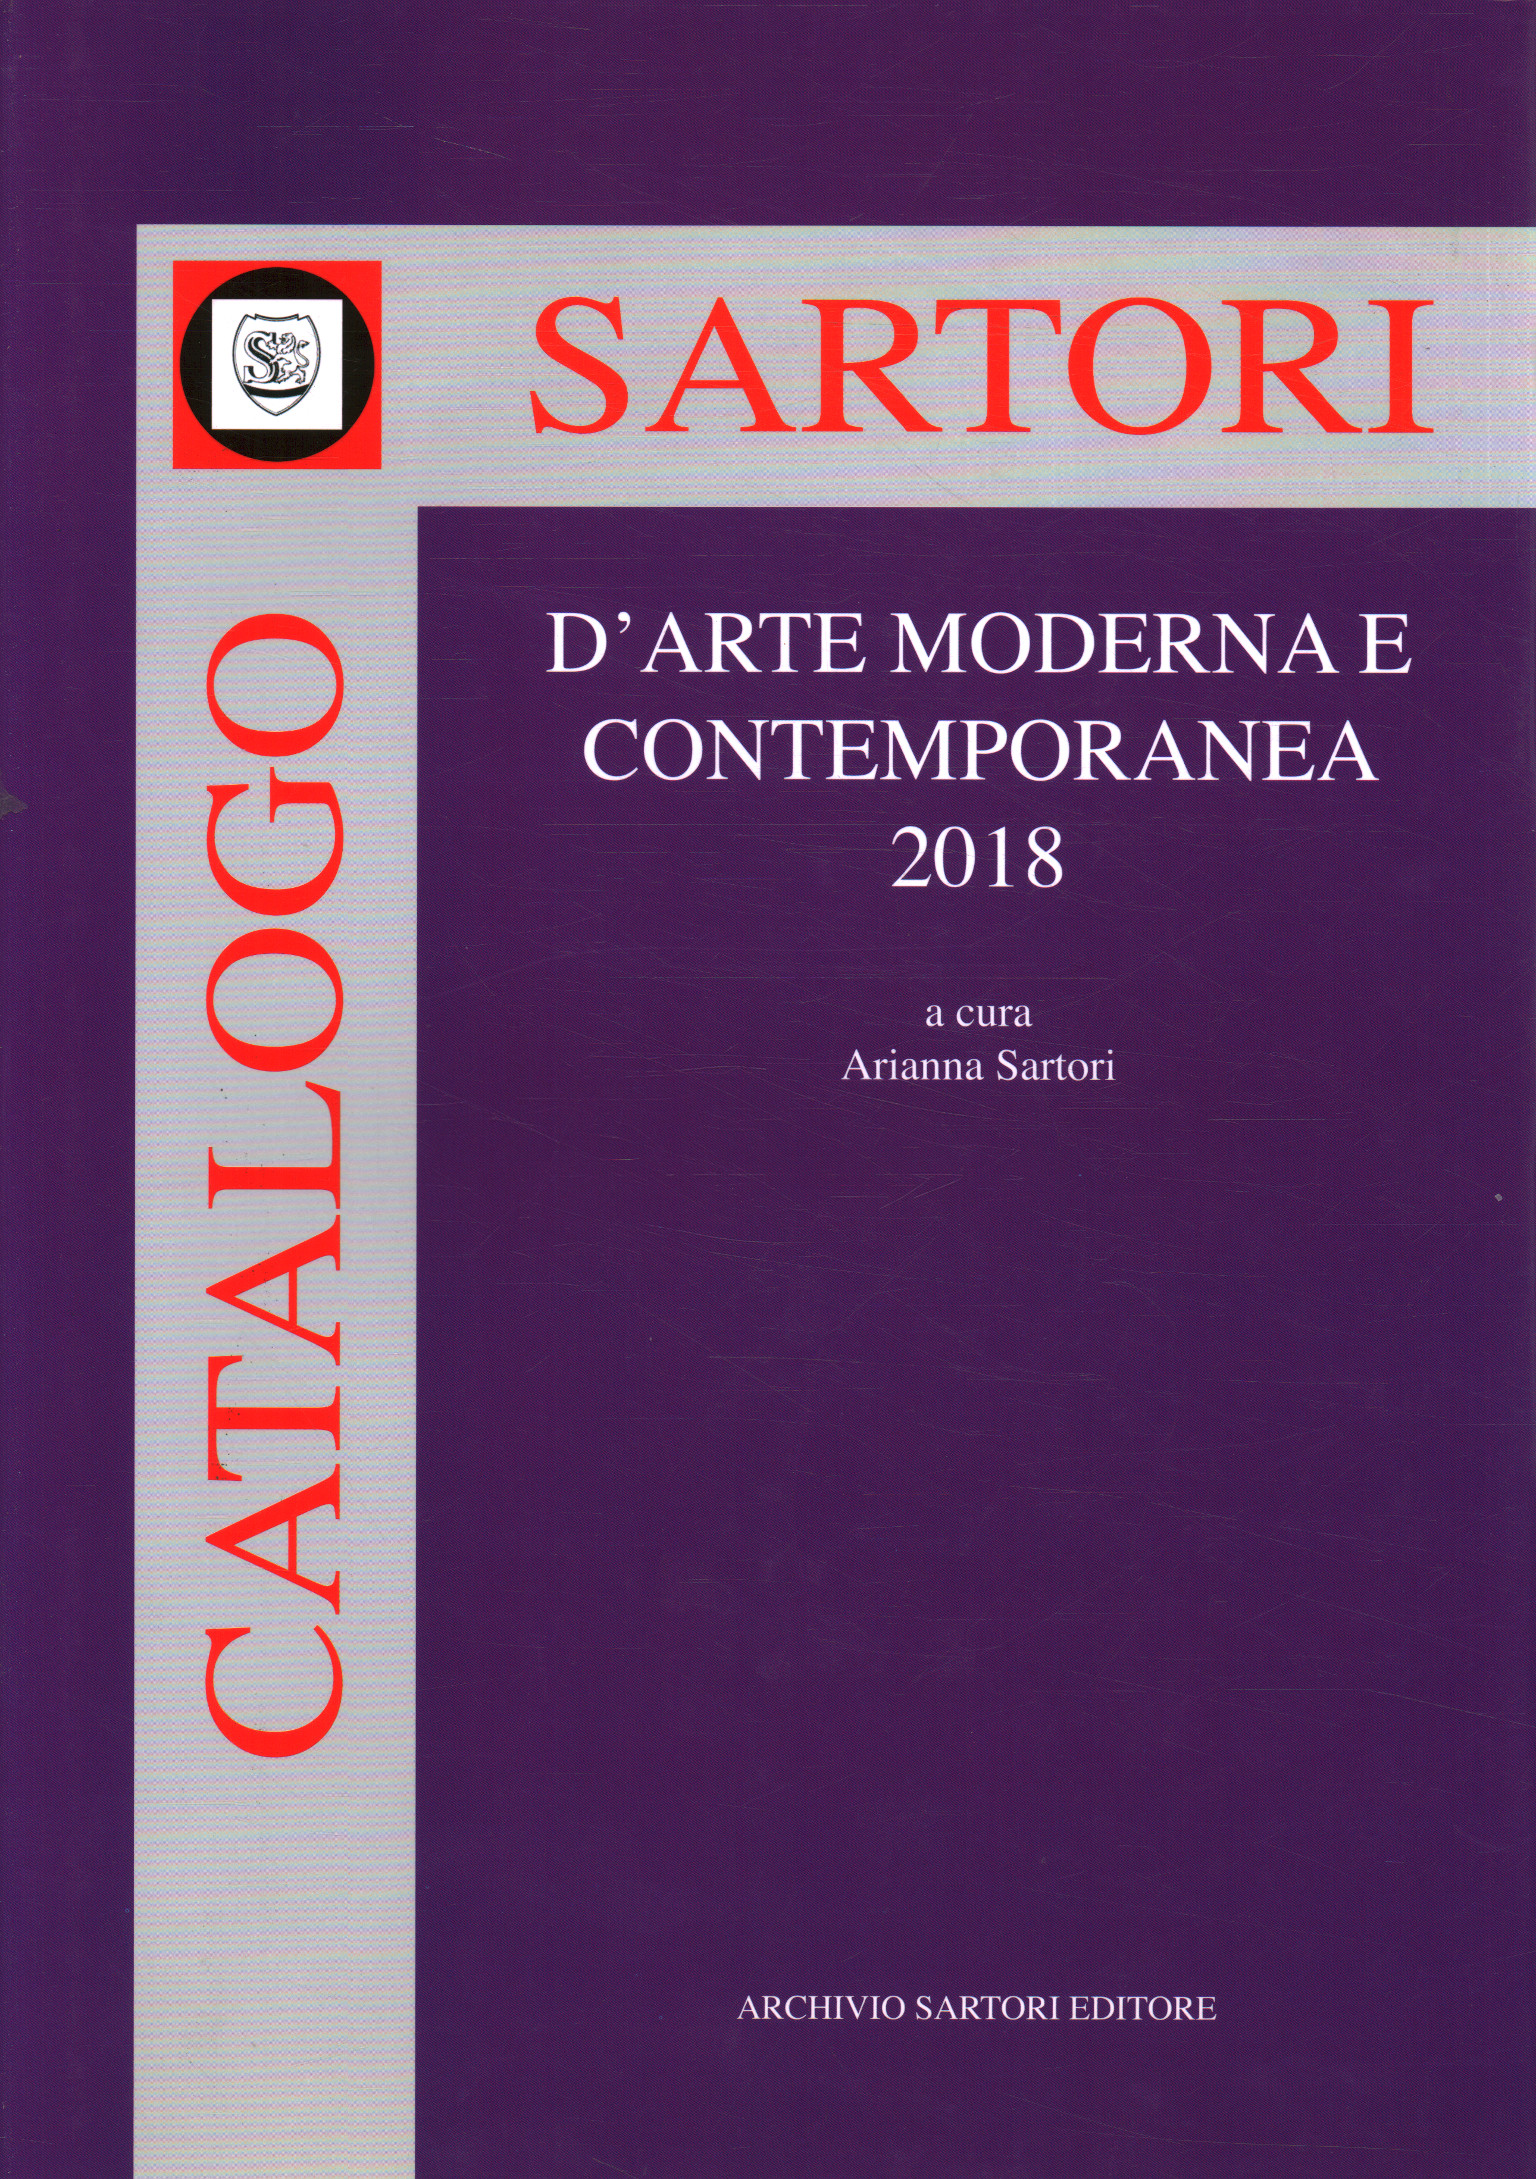 Sartori catálogo de arte moderno% 2